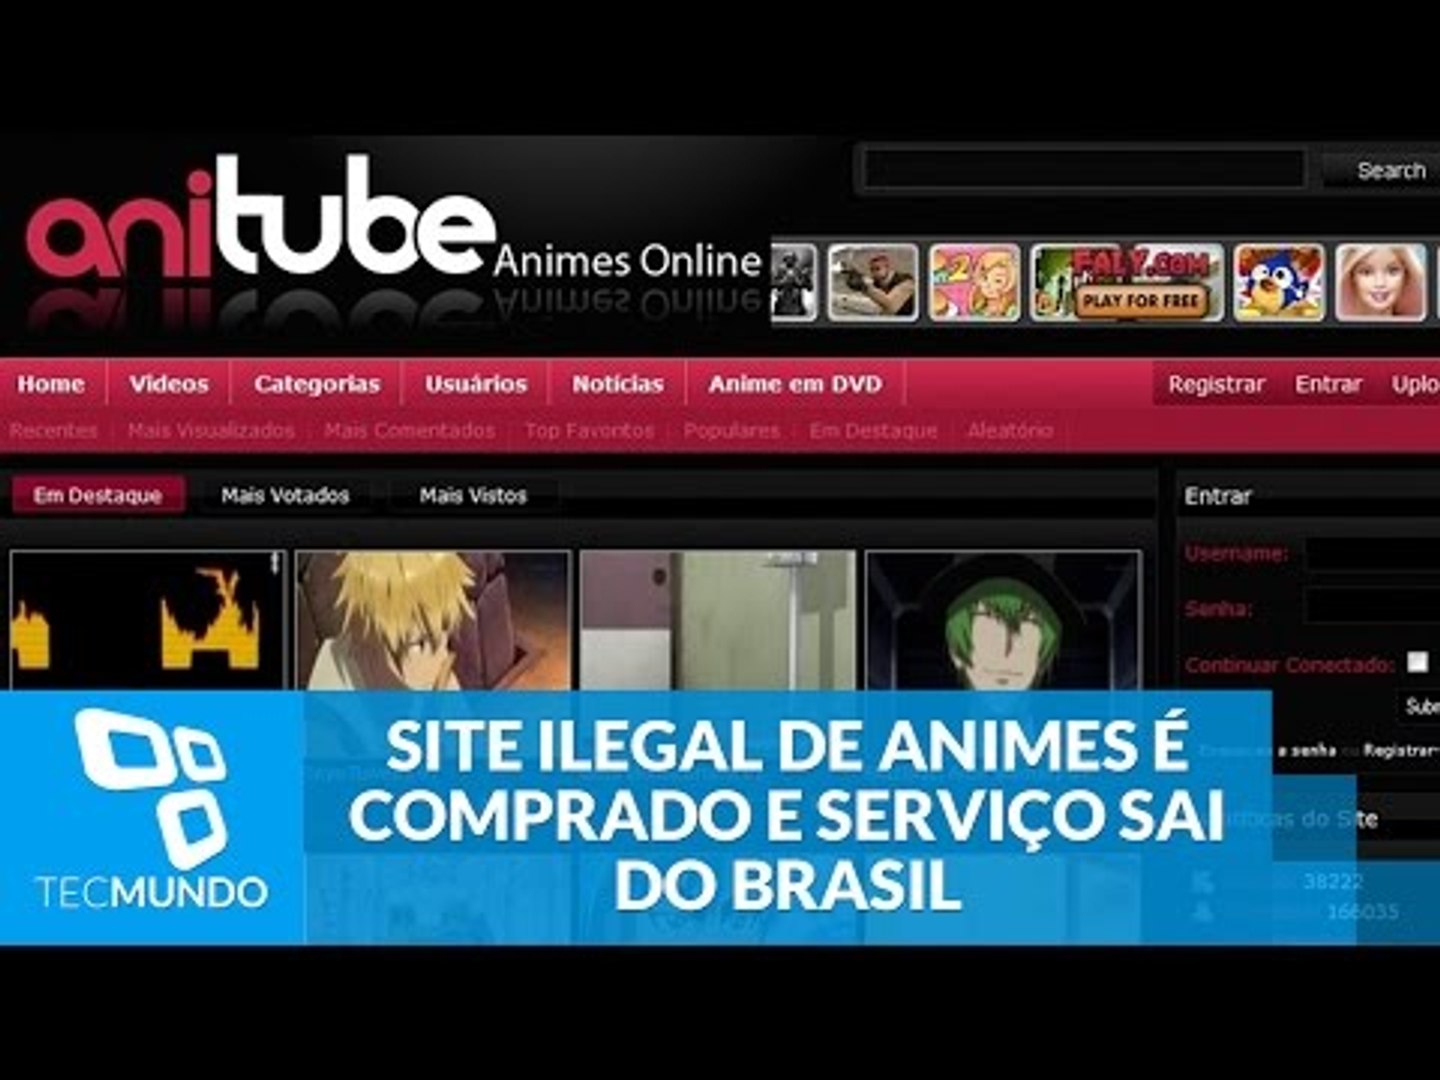 Animes Brasil: AnimesTube Brasil